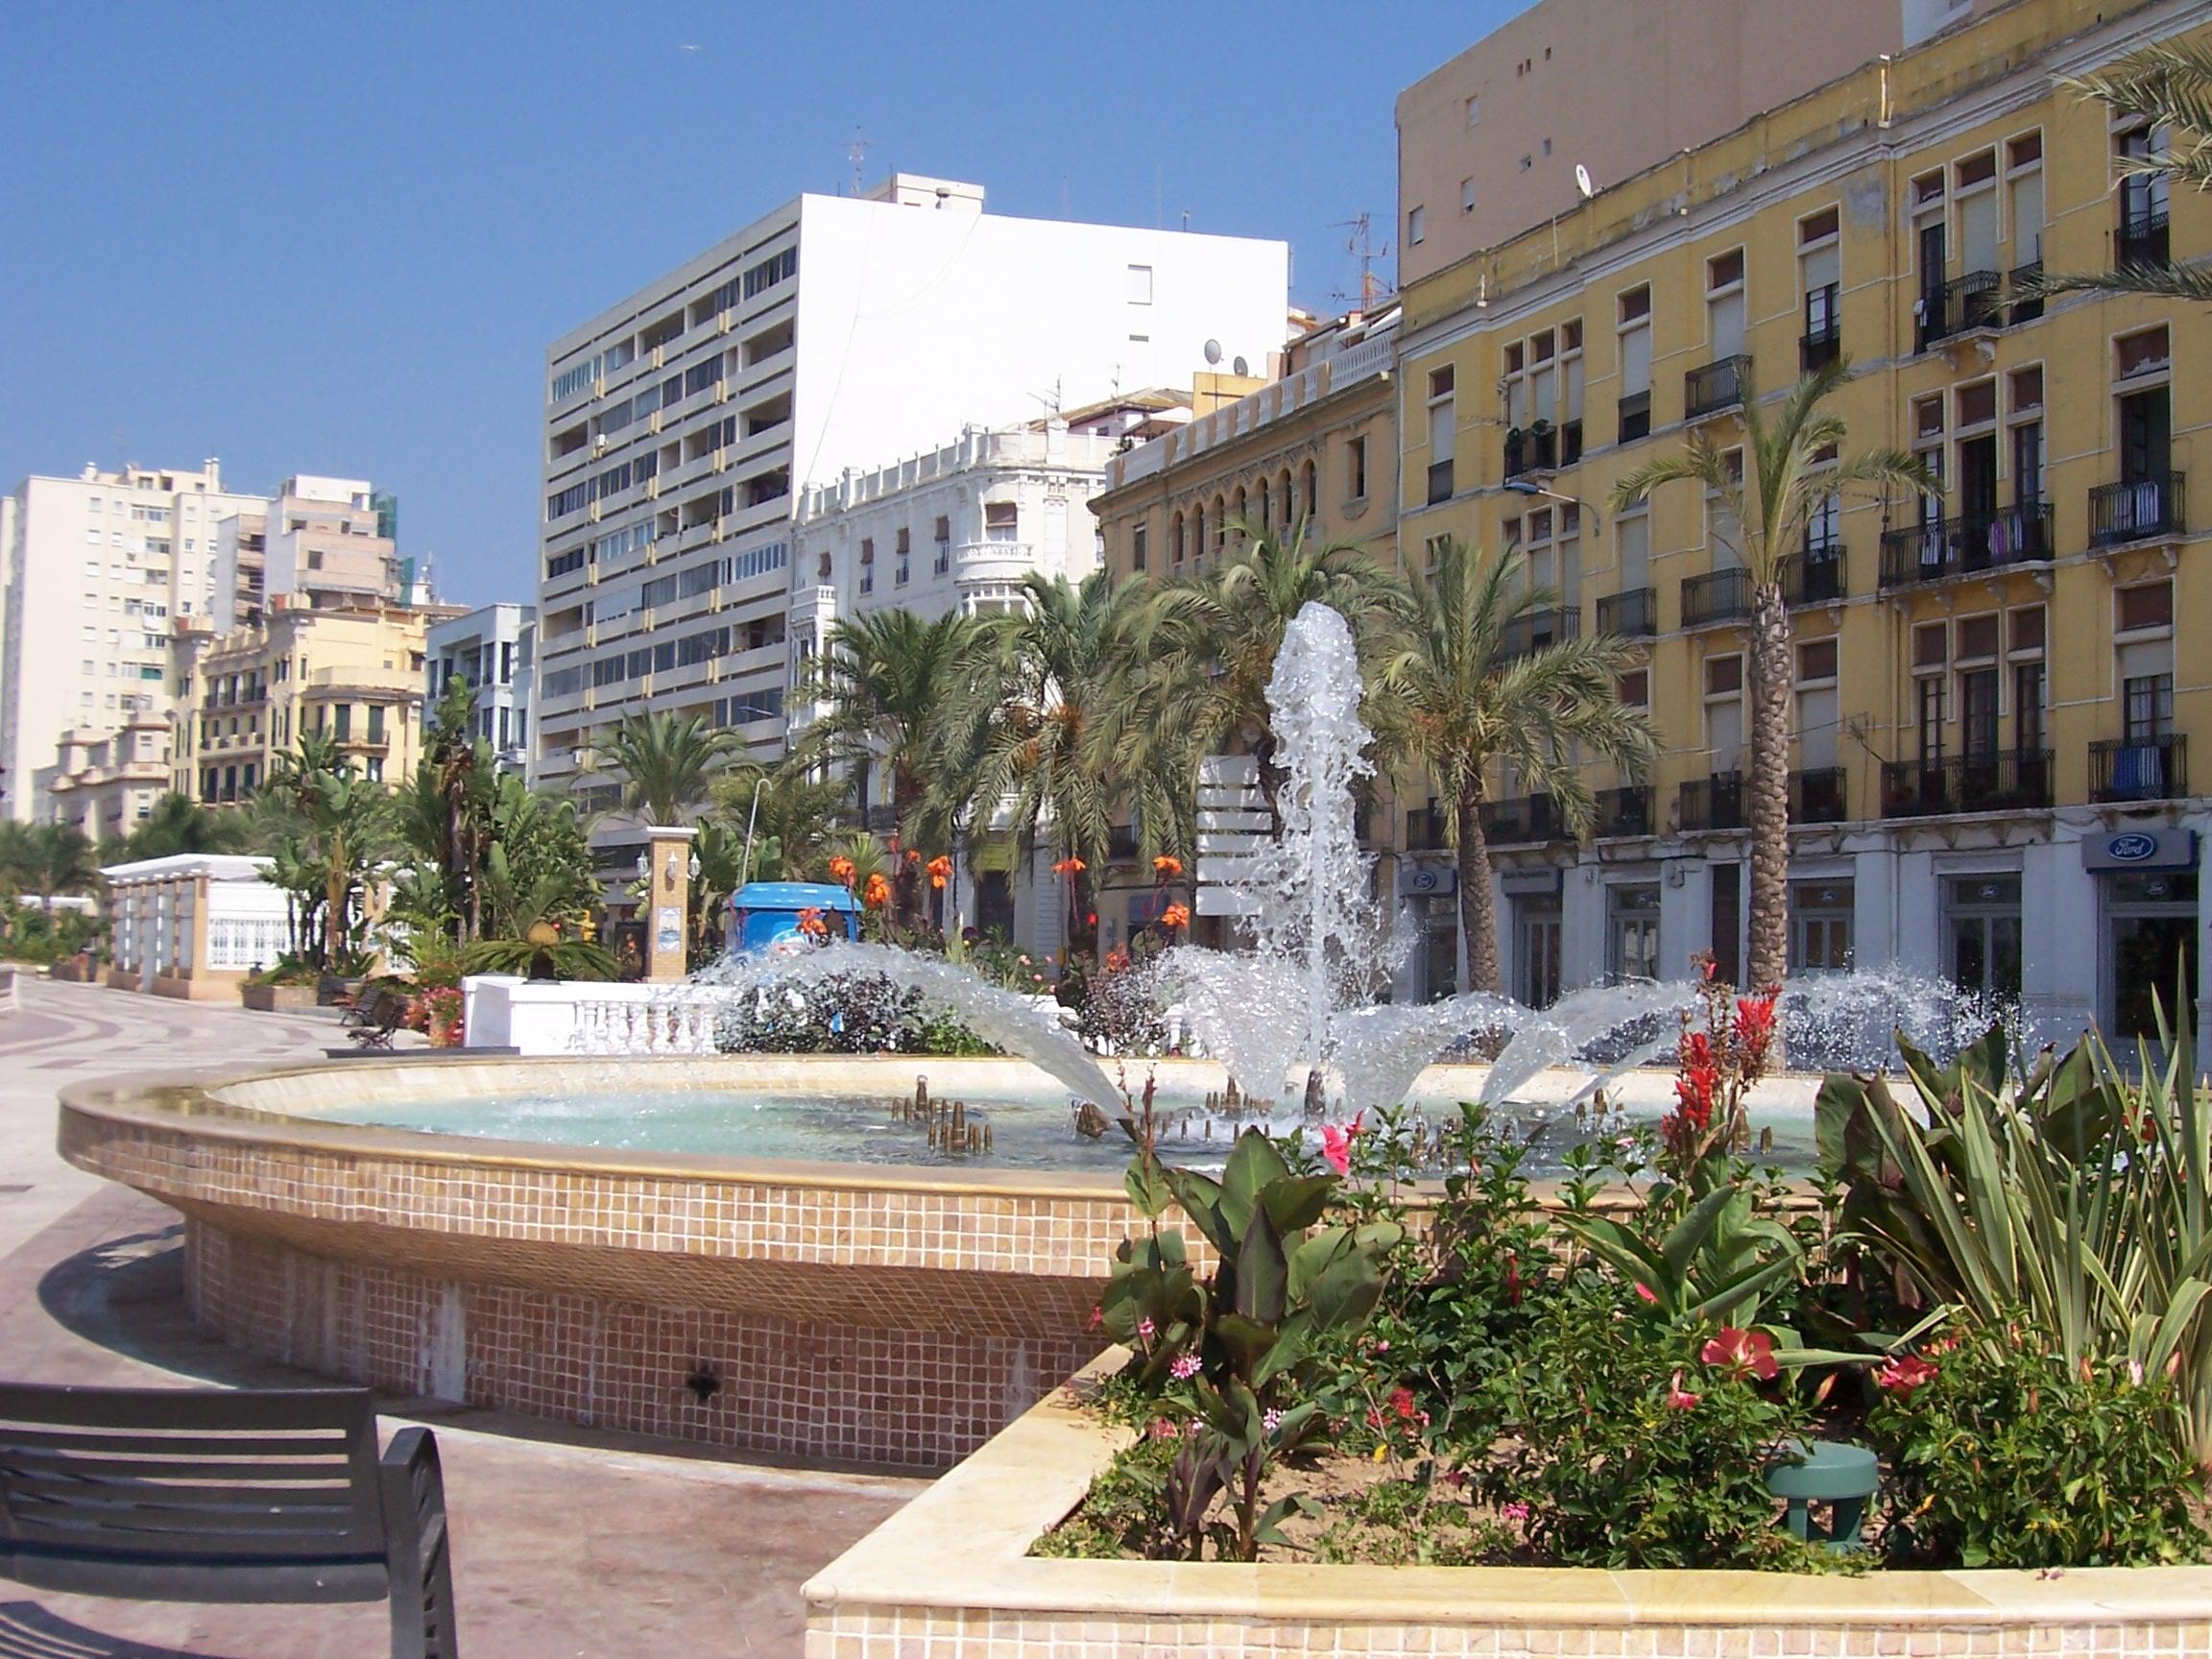 File:Fuente Ceuta.jpg - Wikimedia Commons